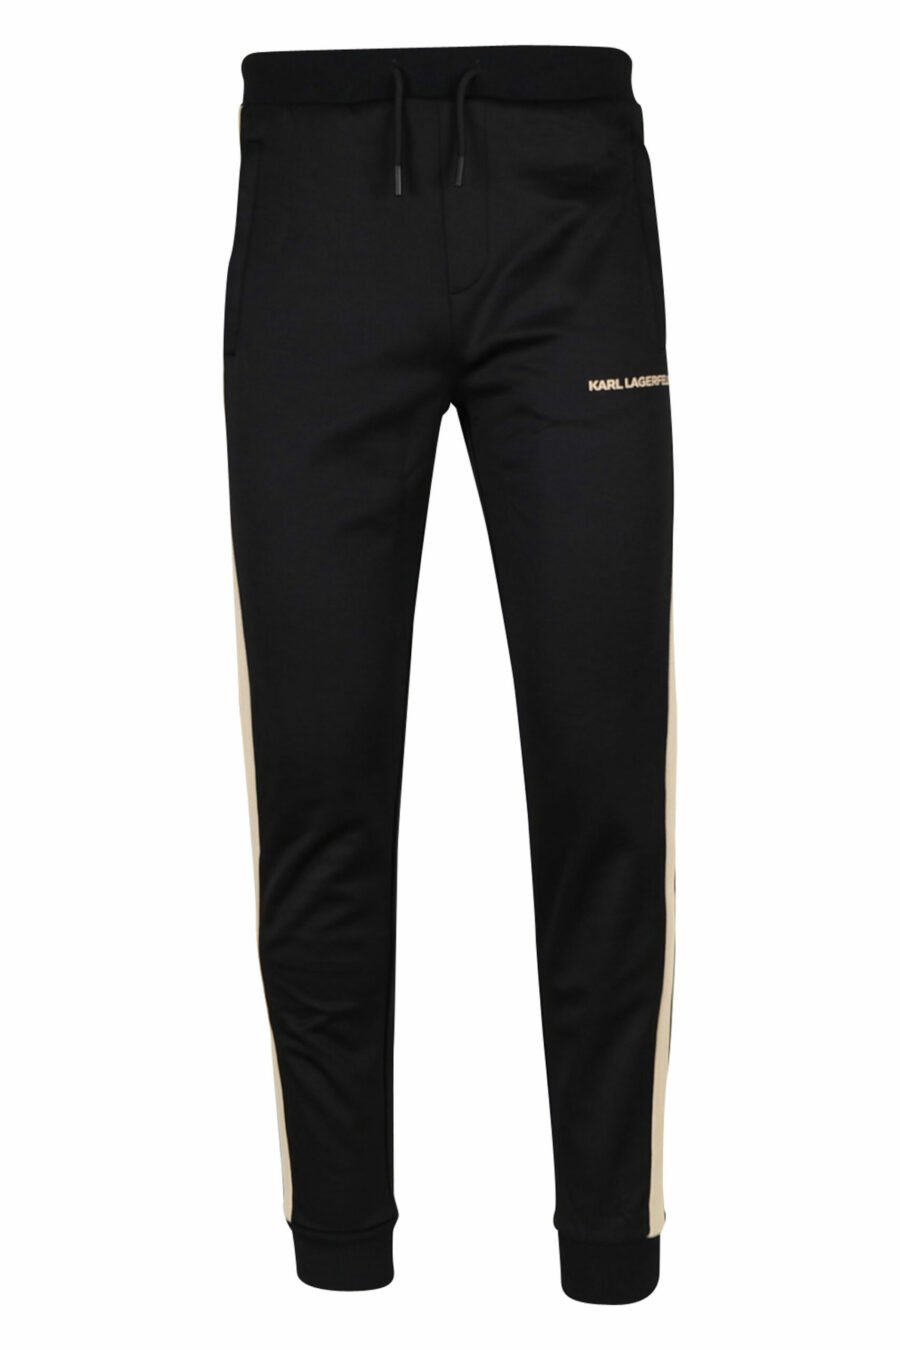 Pantalon noir avec bandes latérales minilogue et beige - 4062226395175